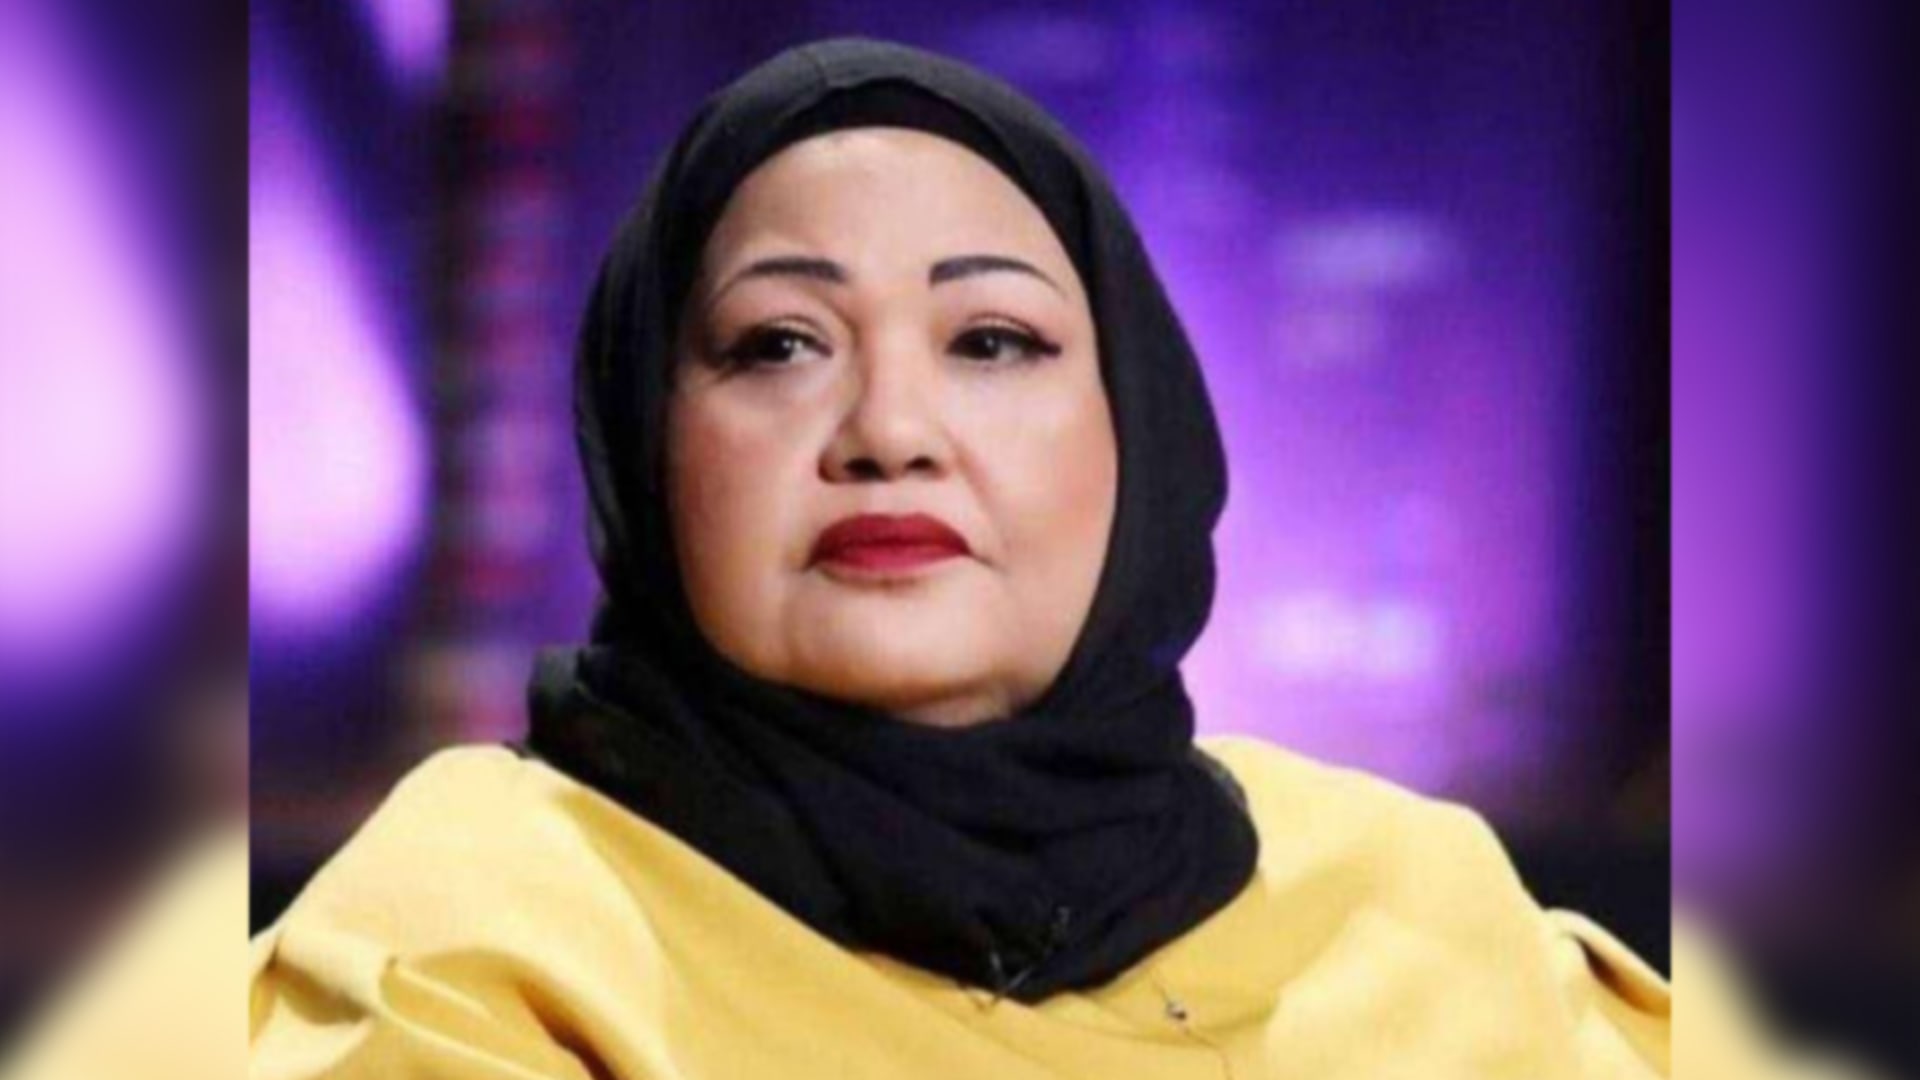 وفاة الفنانة الكويتية انتصار الشراح عن عمر يناهز 59 عامًا